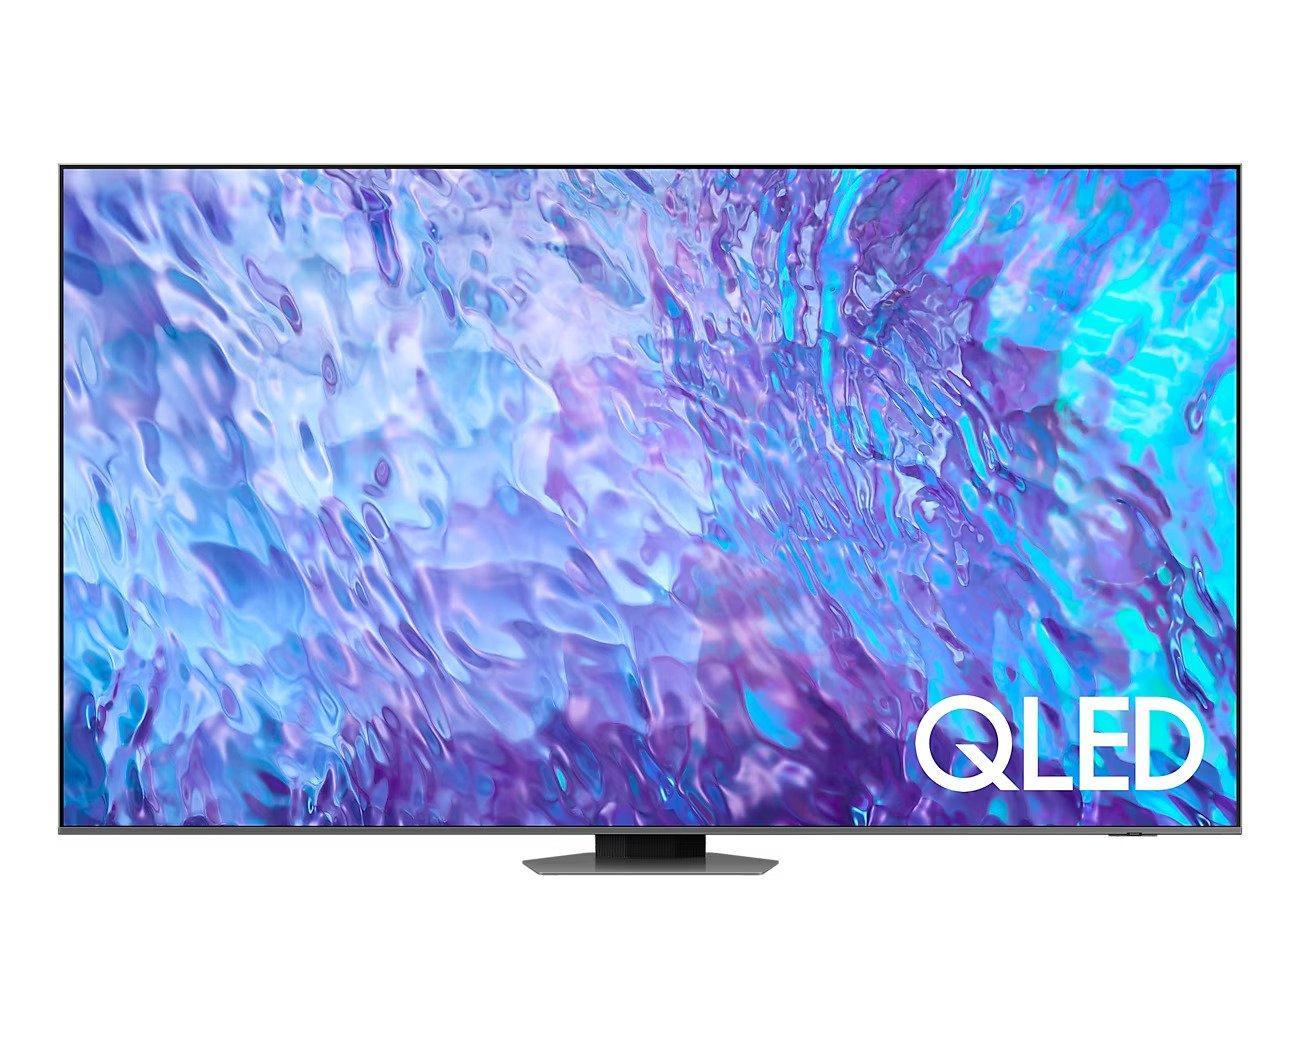 Mở rộng danh mục TV cỡ lớn, Samsung tiếp tục mang đến trải nghiệm nghe nhìn vượt trội - Ảnh 2.